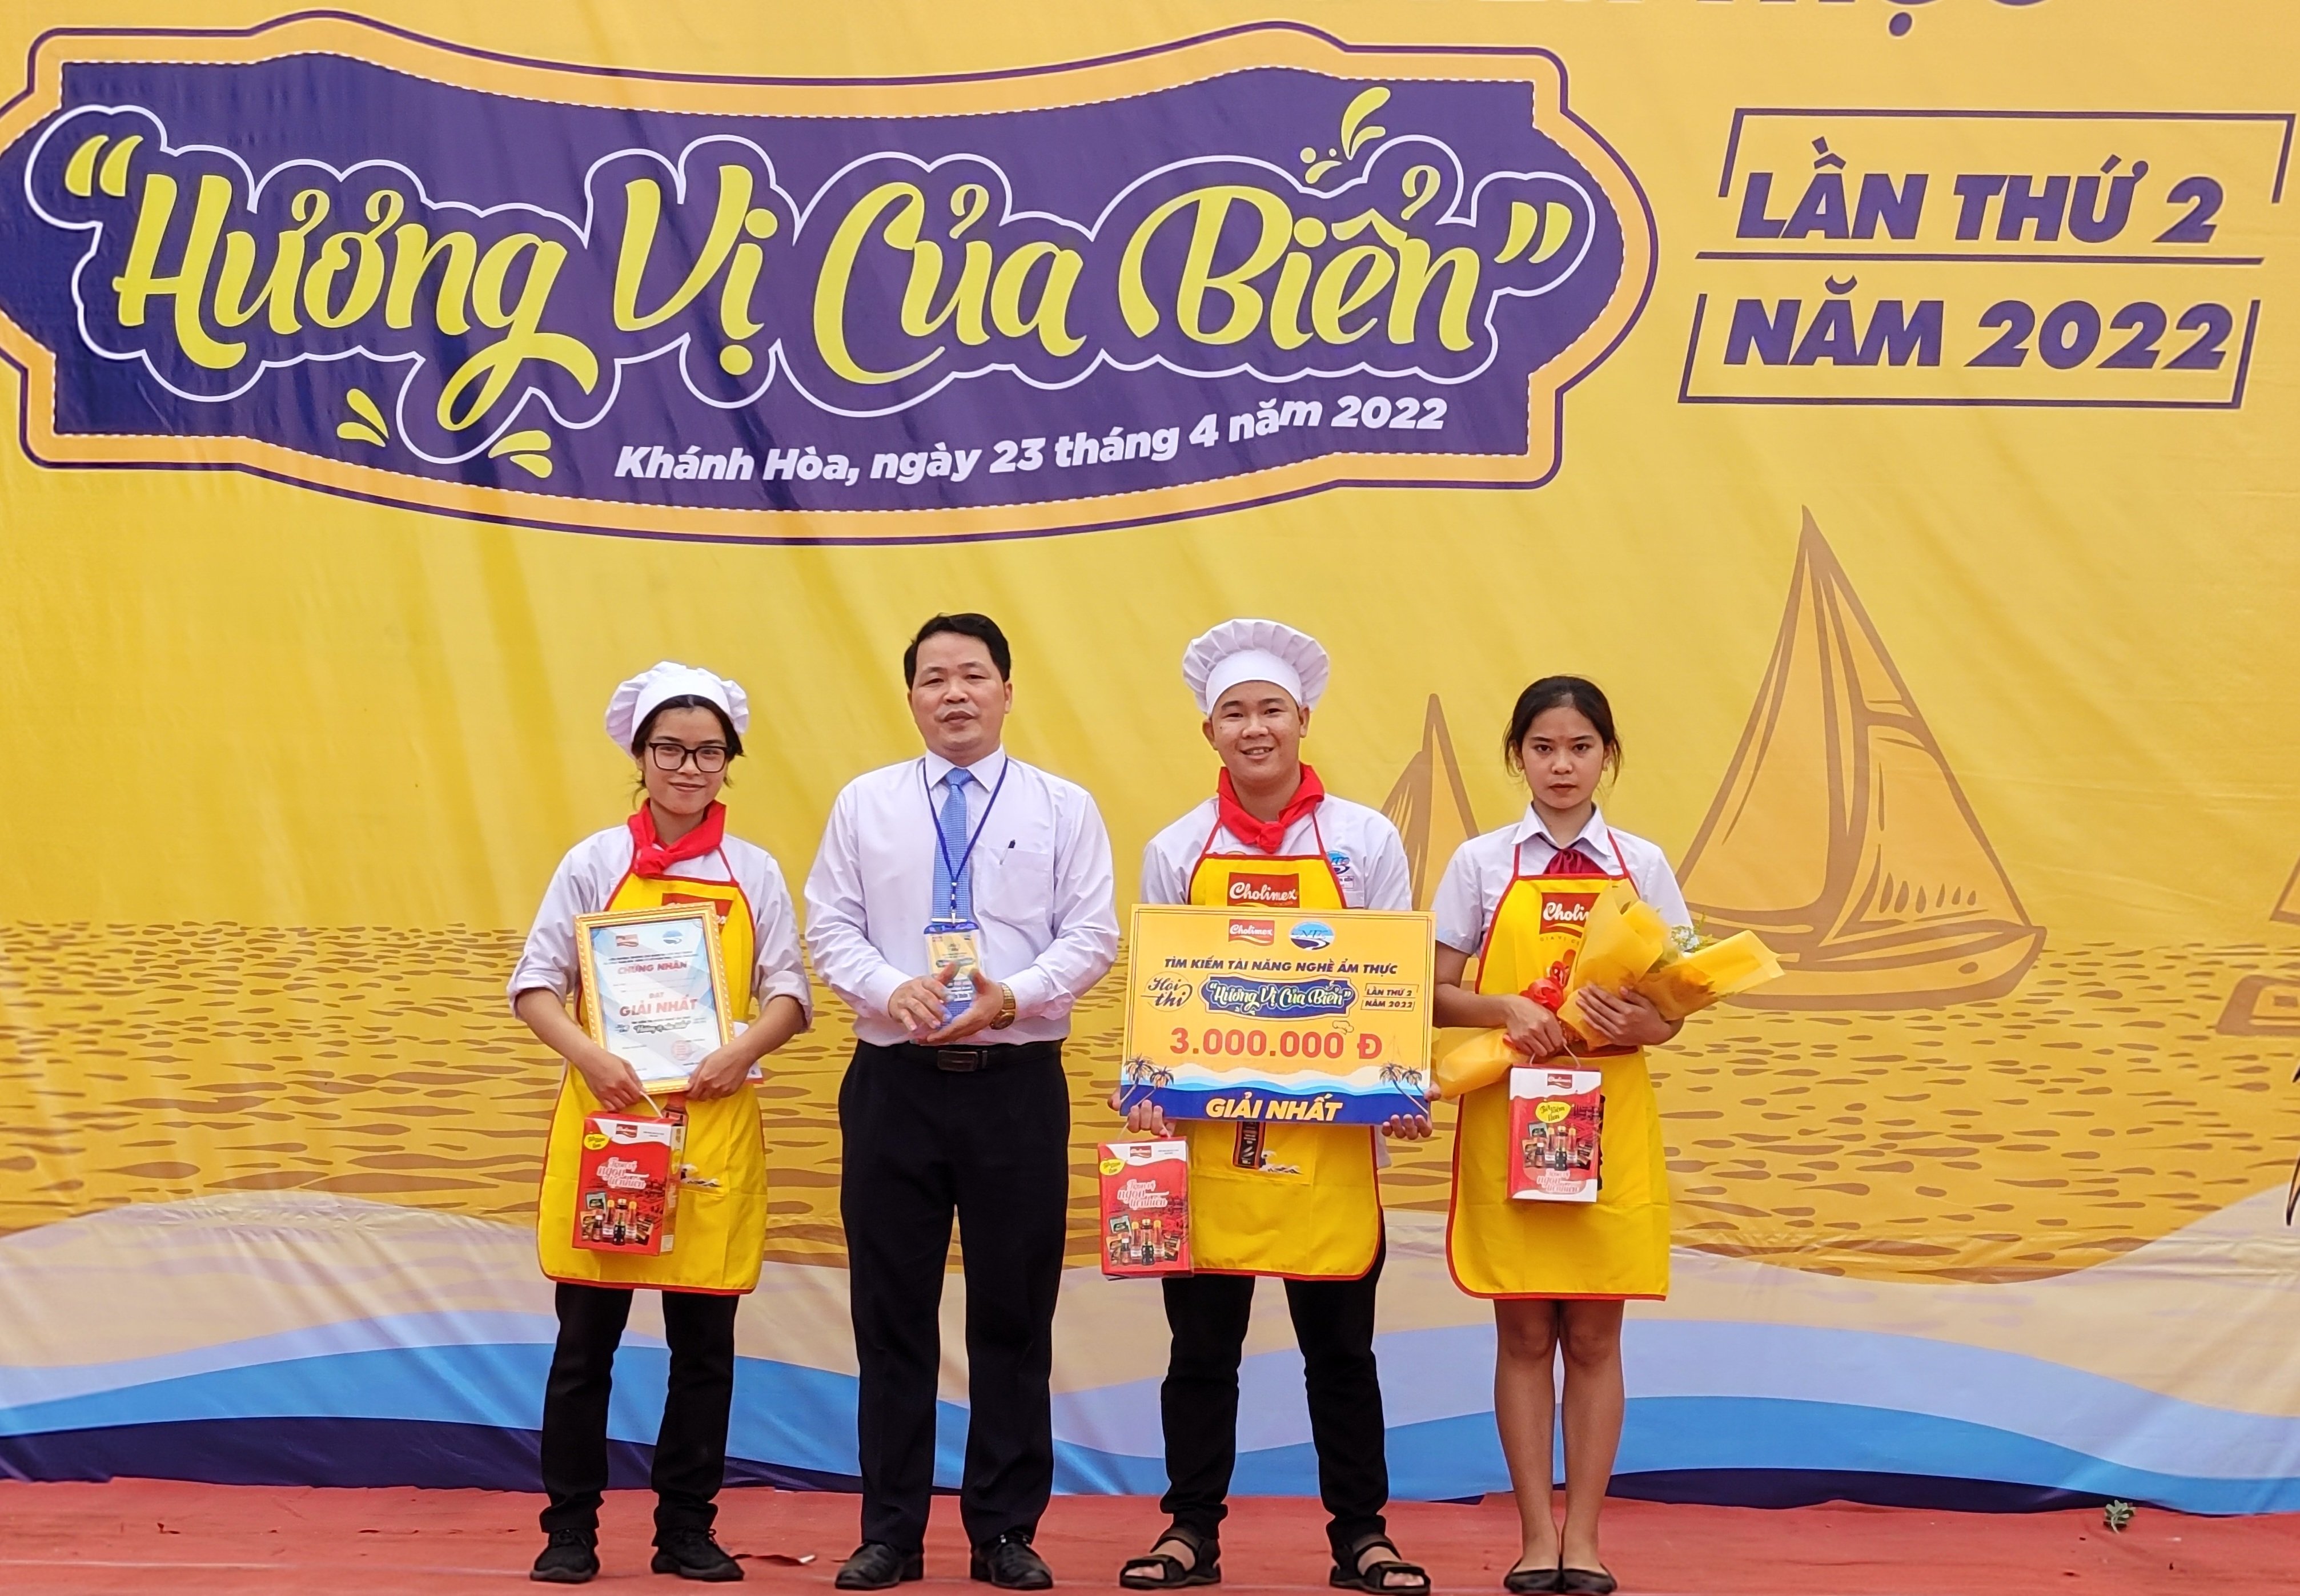 Hiệu trưởng Trường Cao đẳng Du lịch Nha Trang Nguyễn Doãn Thành trao giải Nhất cho đội số 14